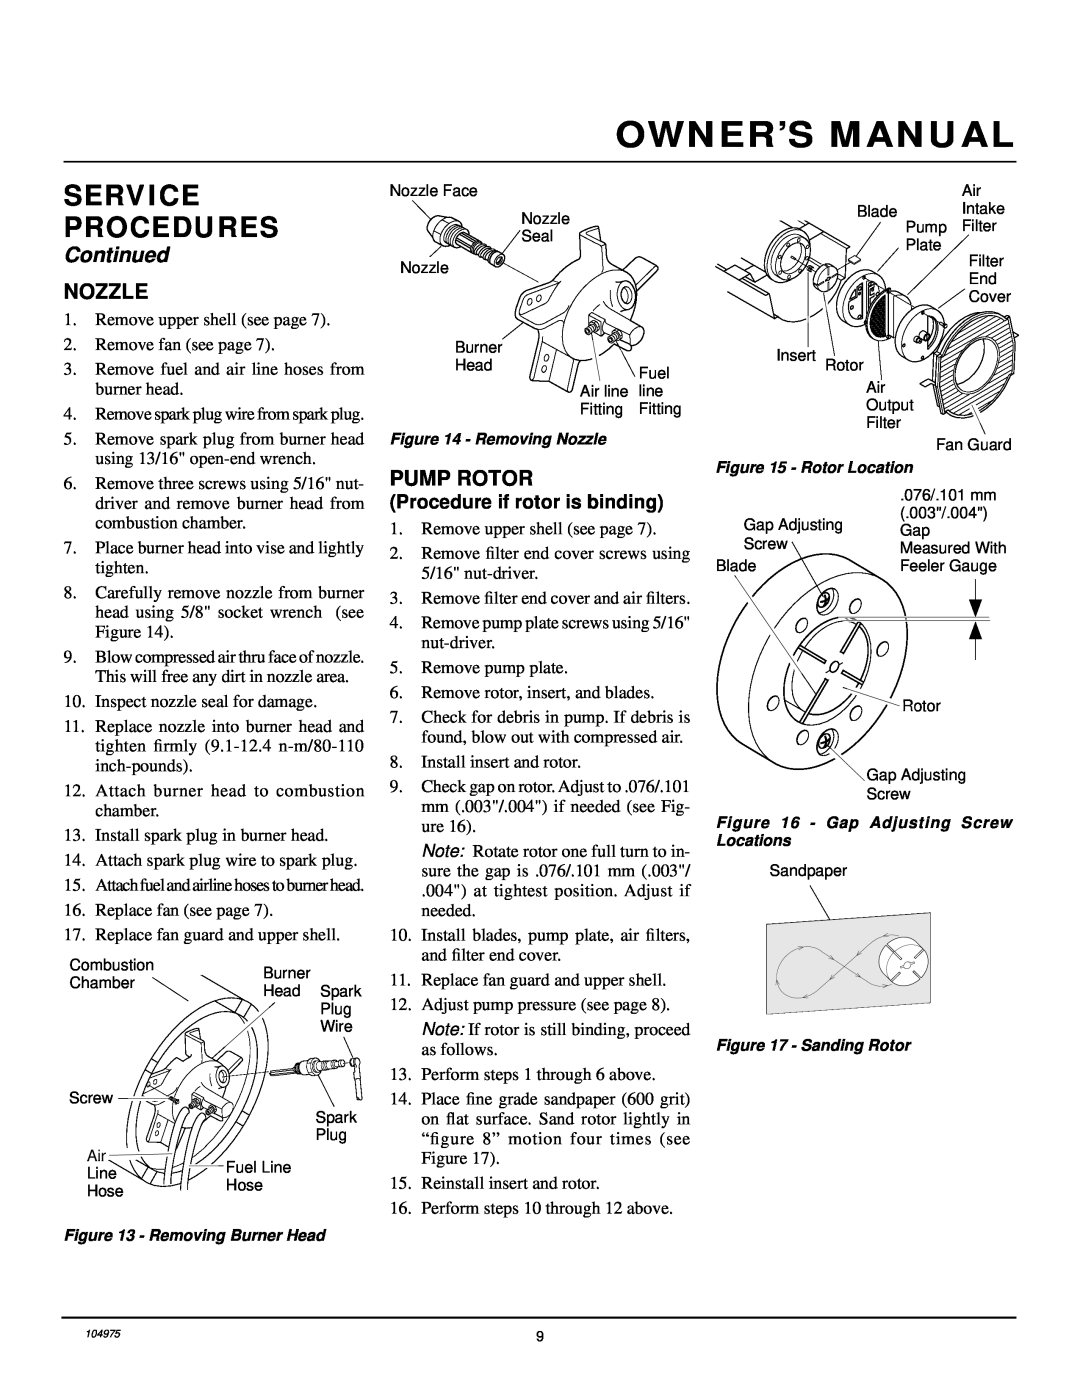 Desa R 15 E UK owner manual Nozzle, Pump Rotor, Service Procedures, Continued 